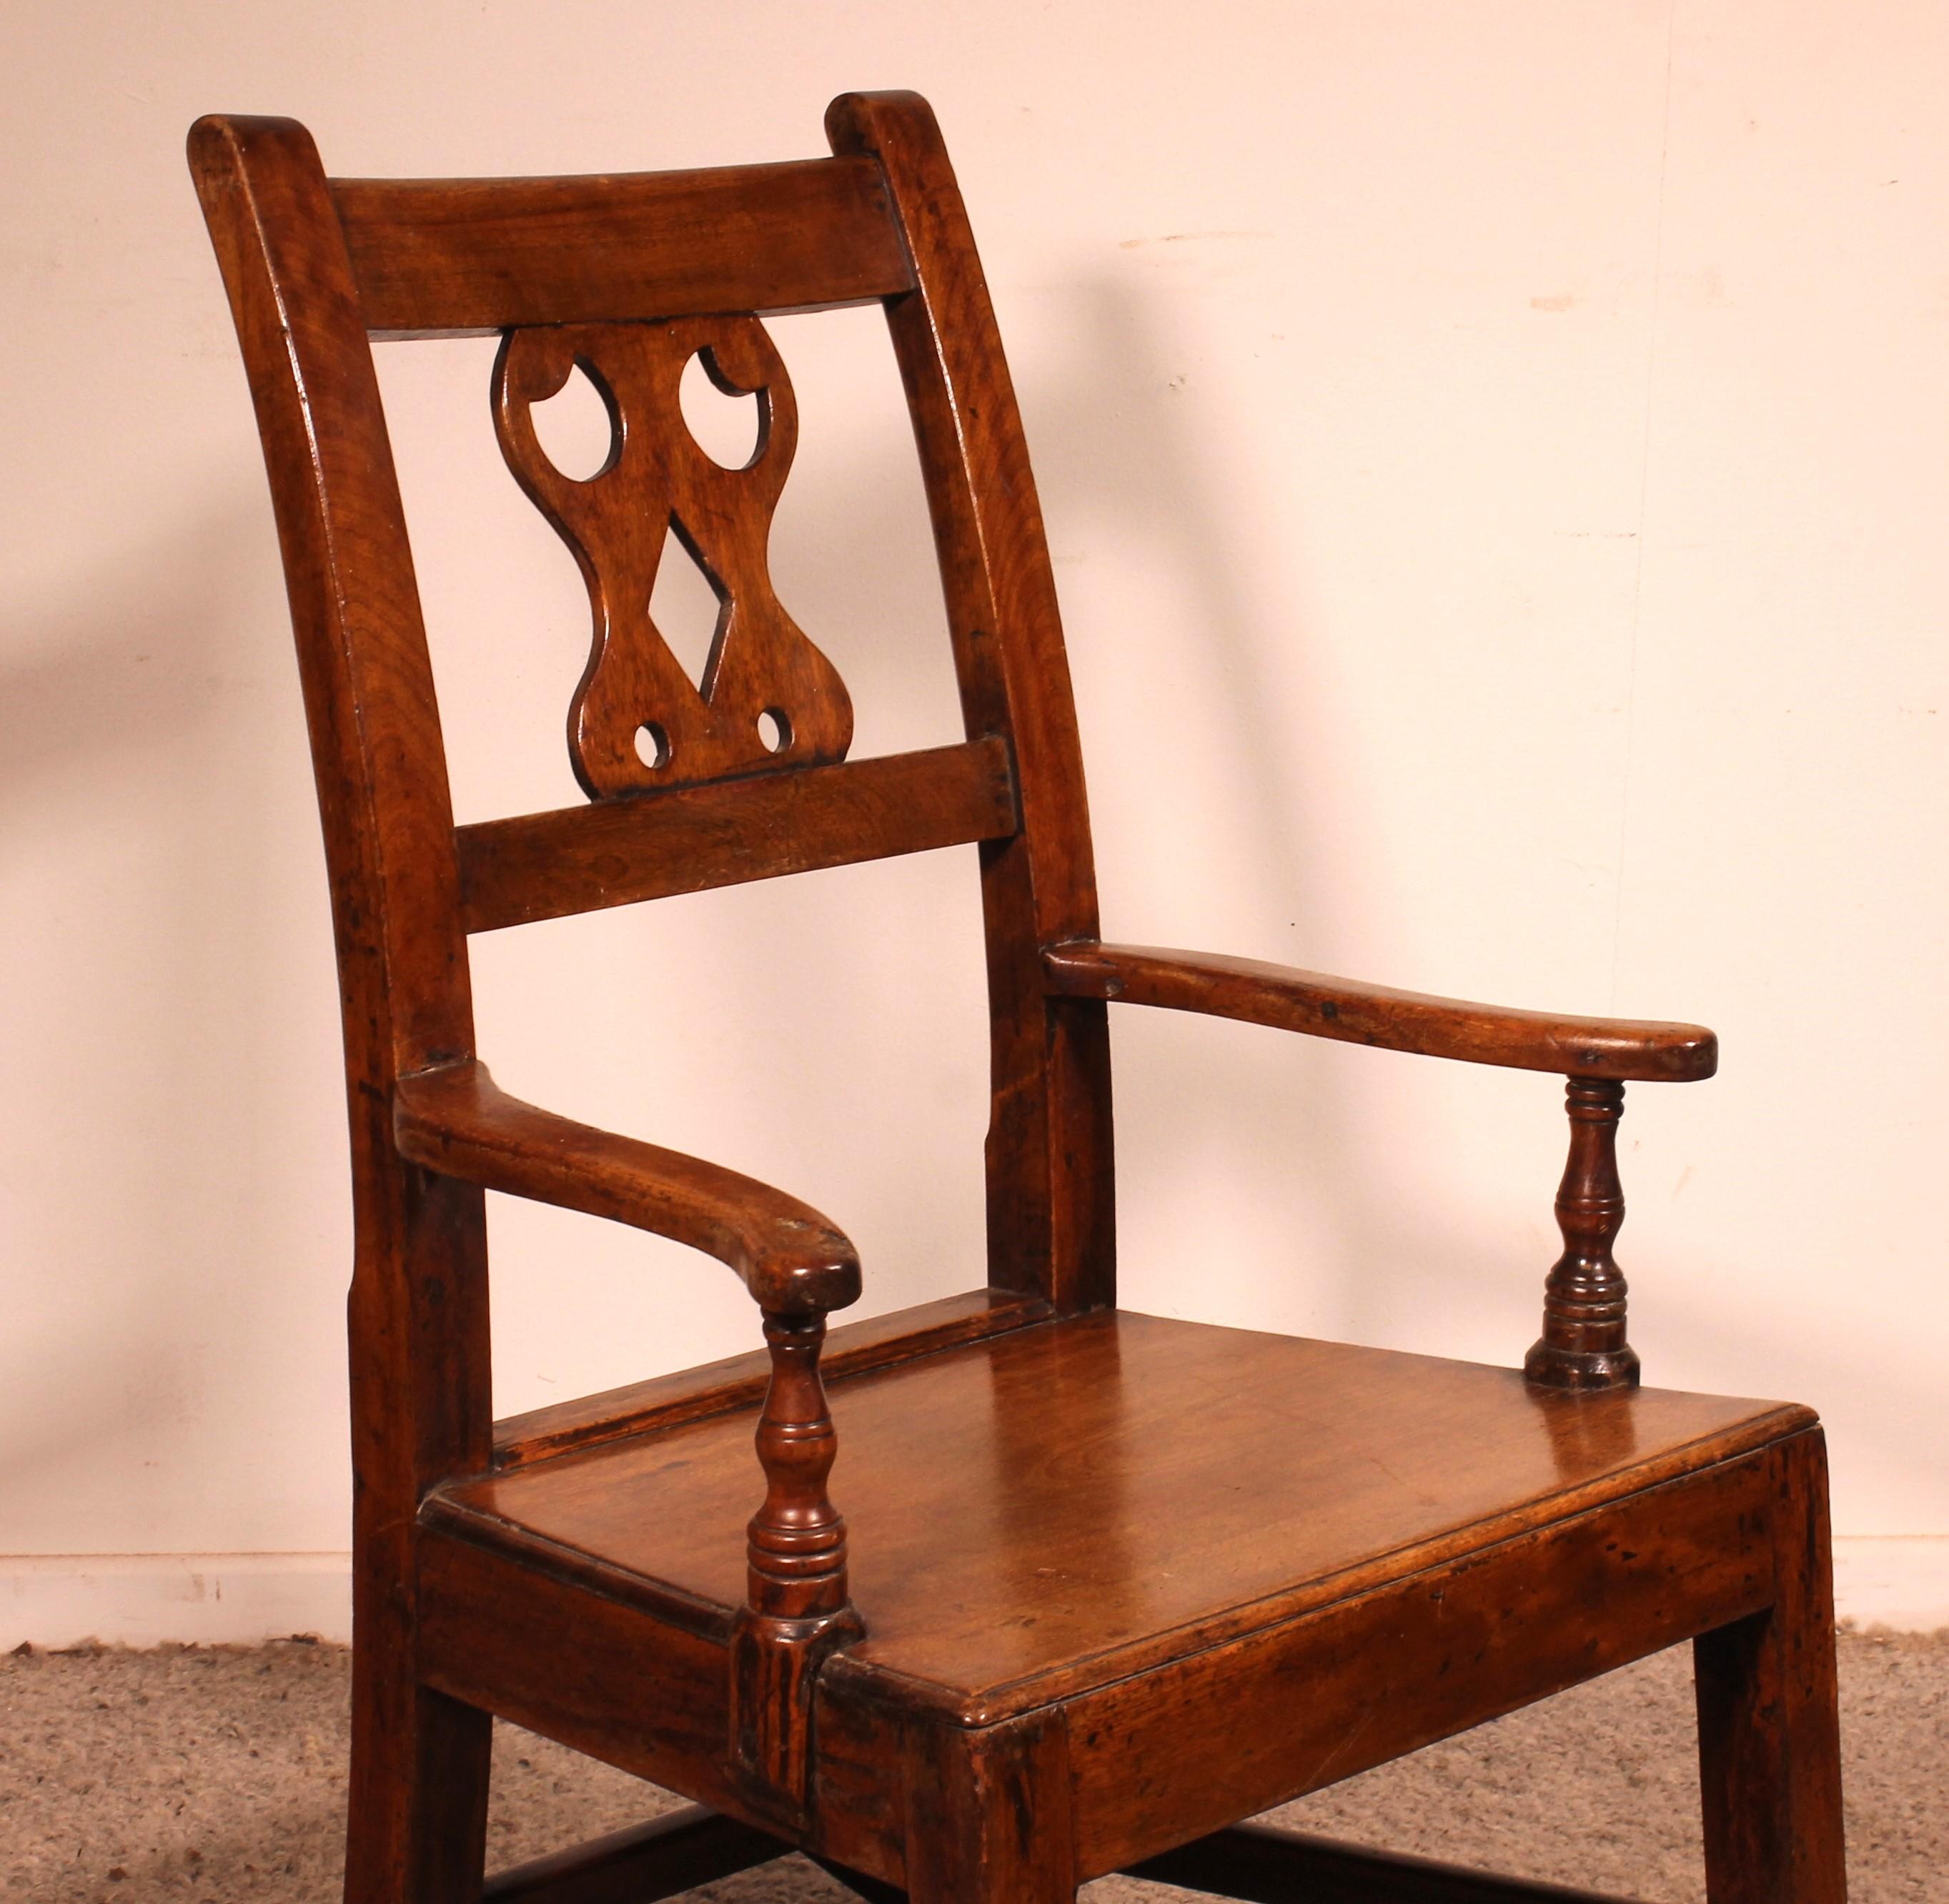 Chaise à bascule en acajou du 18e siècle du Pays de Galles en acajou
Pièce rare et de bonne qualité

Les accoudoirs sont légèrement incurvés et tournent un peu.

fauteuil robuste et très décoratif